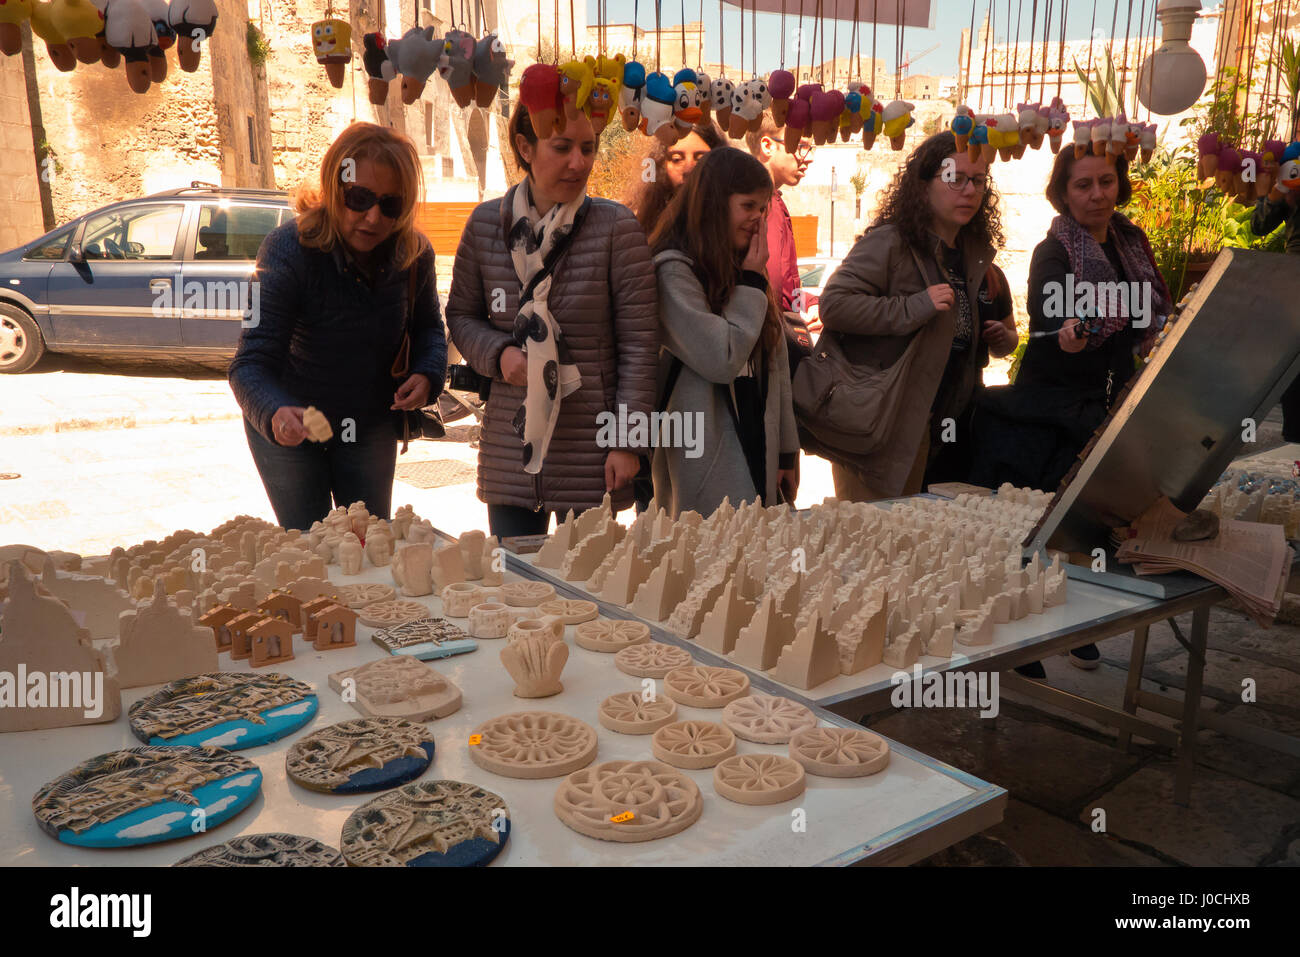 Las mujeres en el mercado de recuerdos en matera de calado. Foto de stock